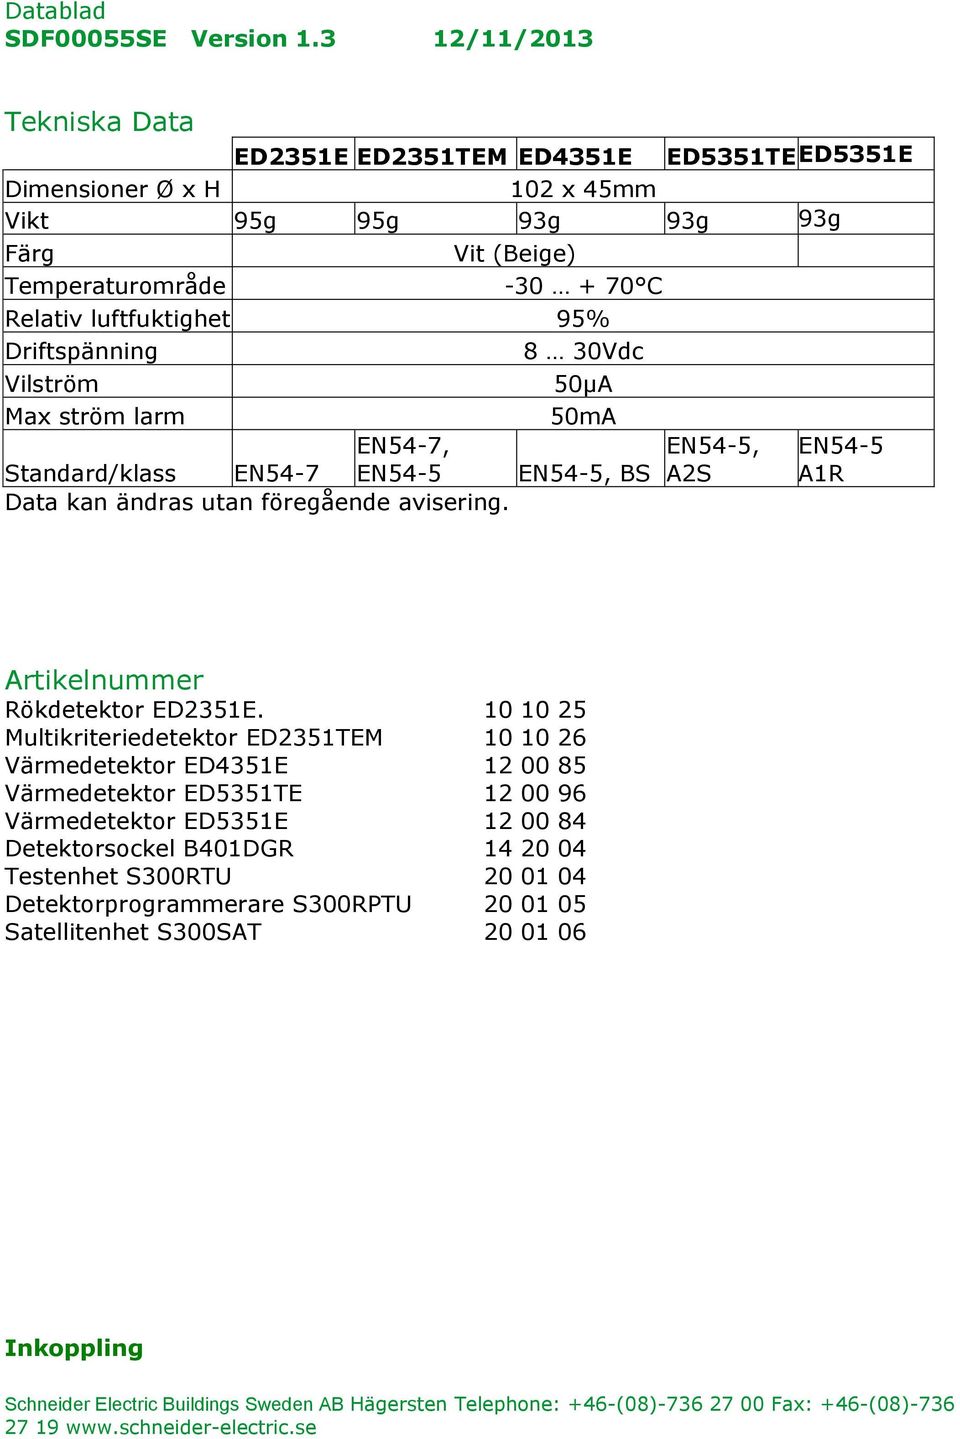 Driftspänning 8 30Vdc Vilström 50µA Max ström larm 50mA Standard/klass EN54-7 EN54-7, EN54-5 EN54-5, EN54-5, BS A2S EN54-5 A1R Data kan ändras utan föregående avisering.